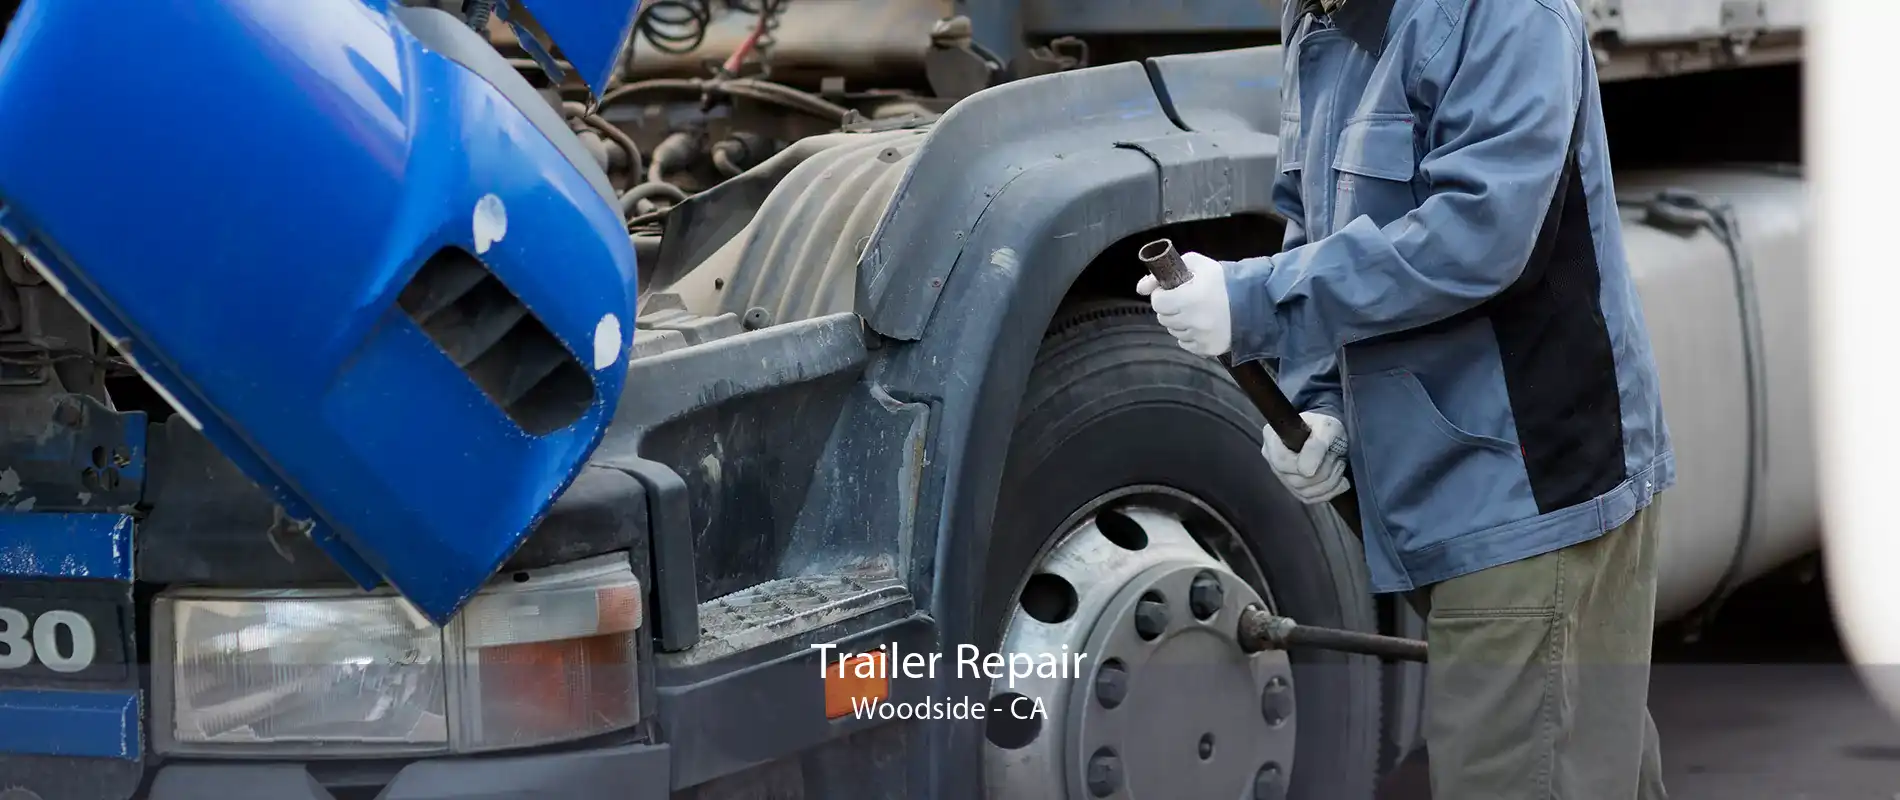 Trailer Repair Woodside - CA